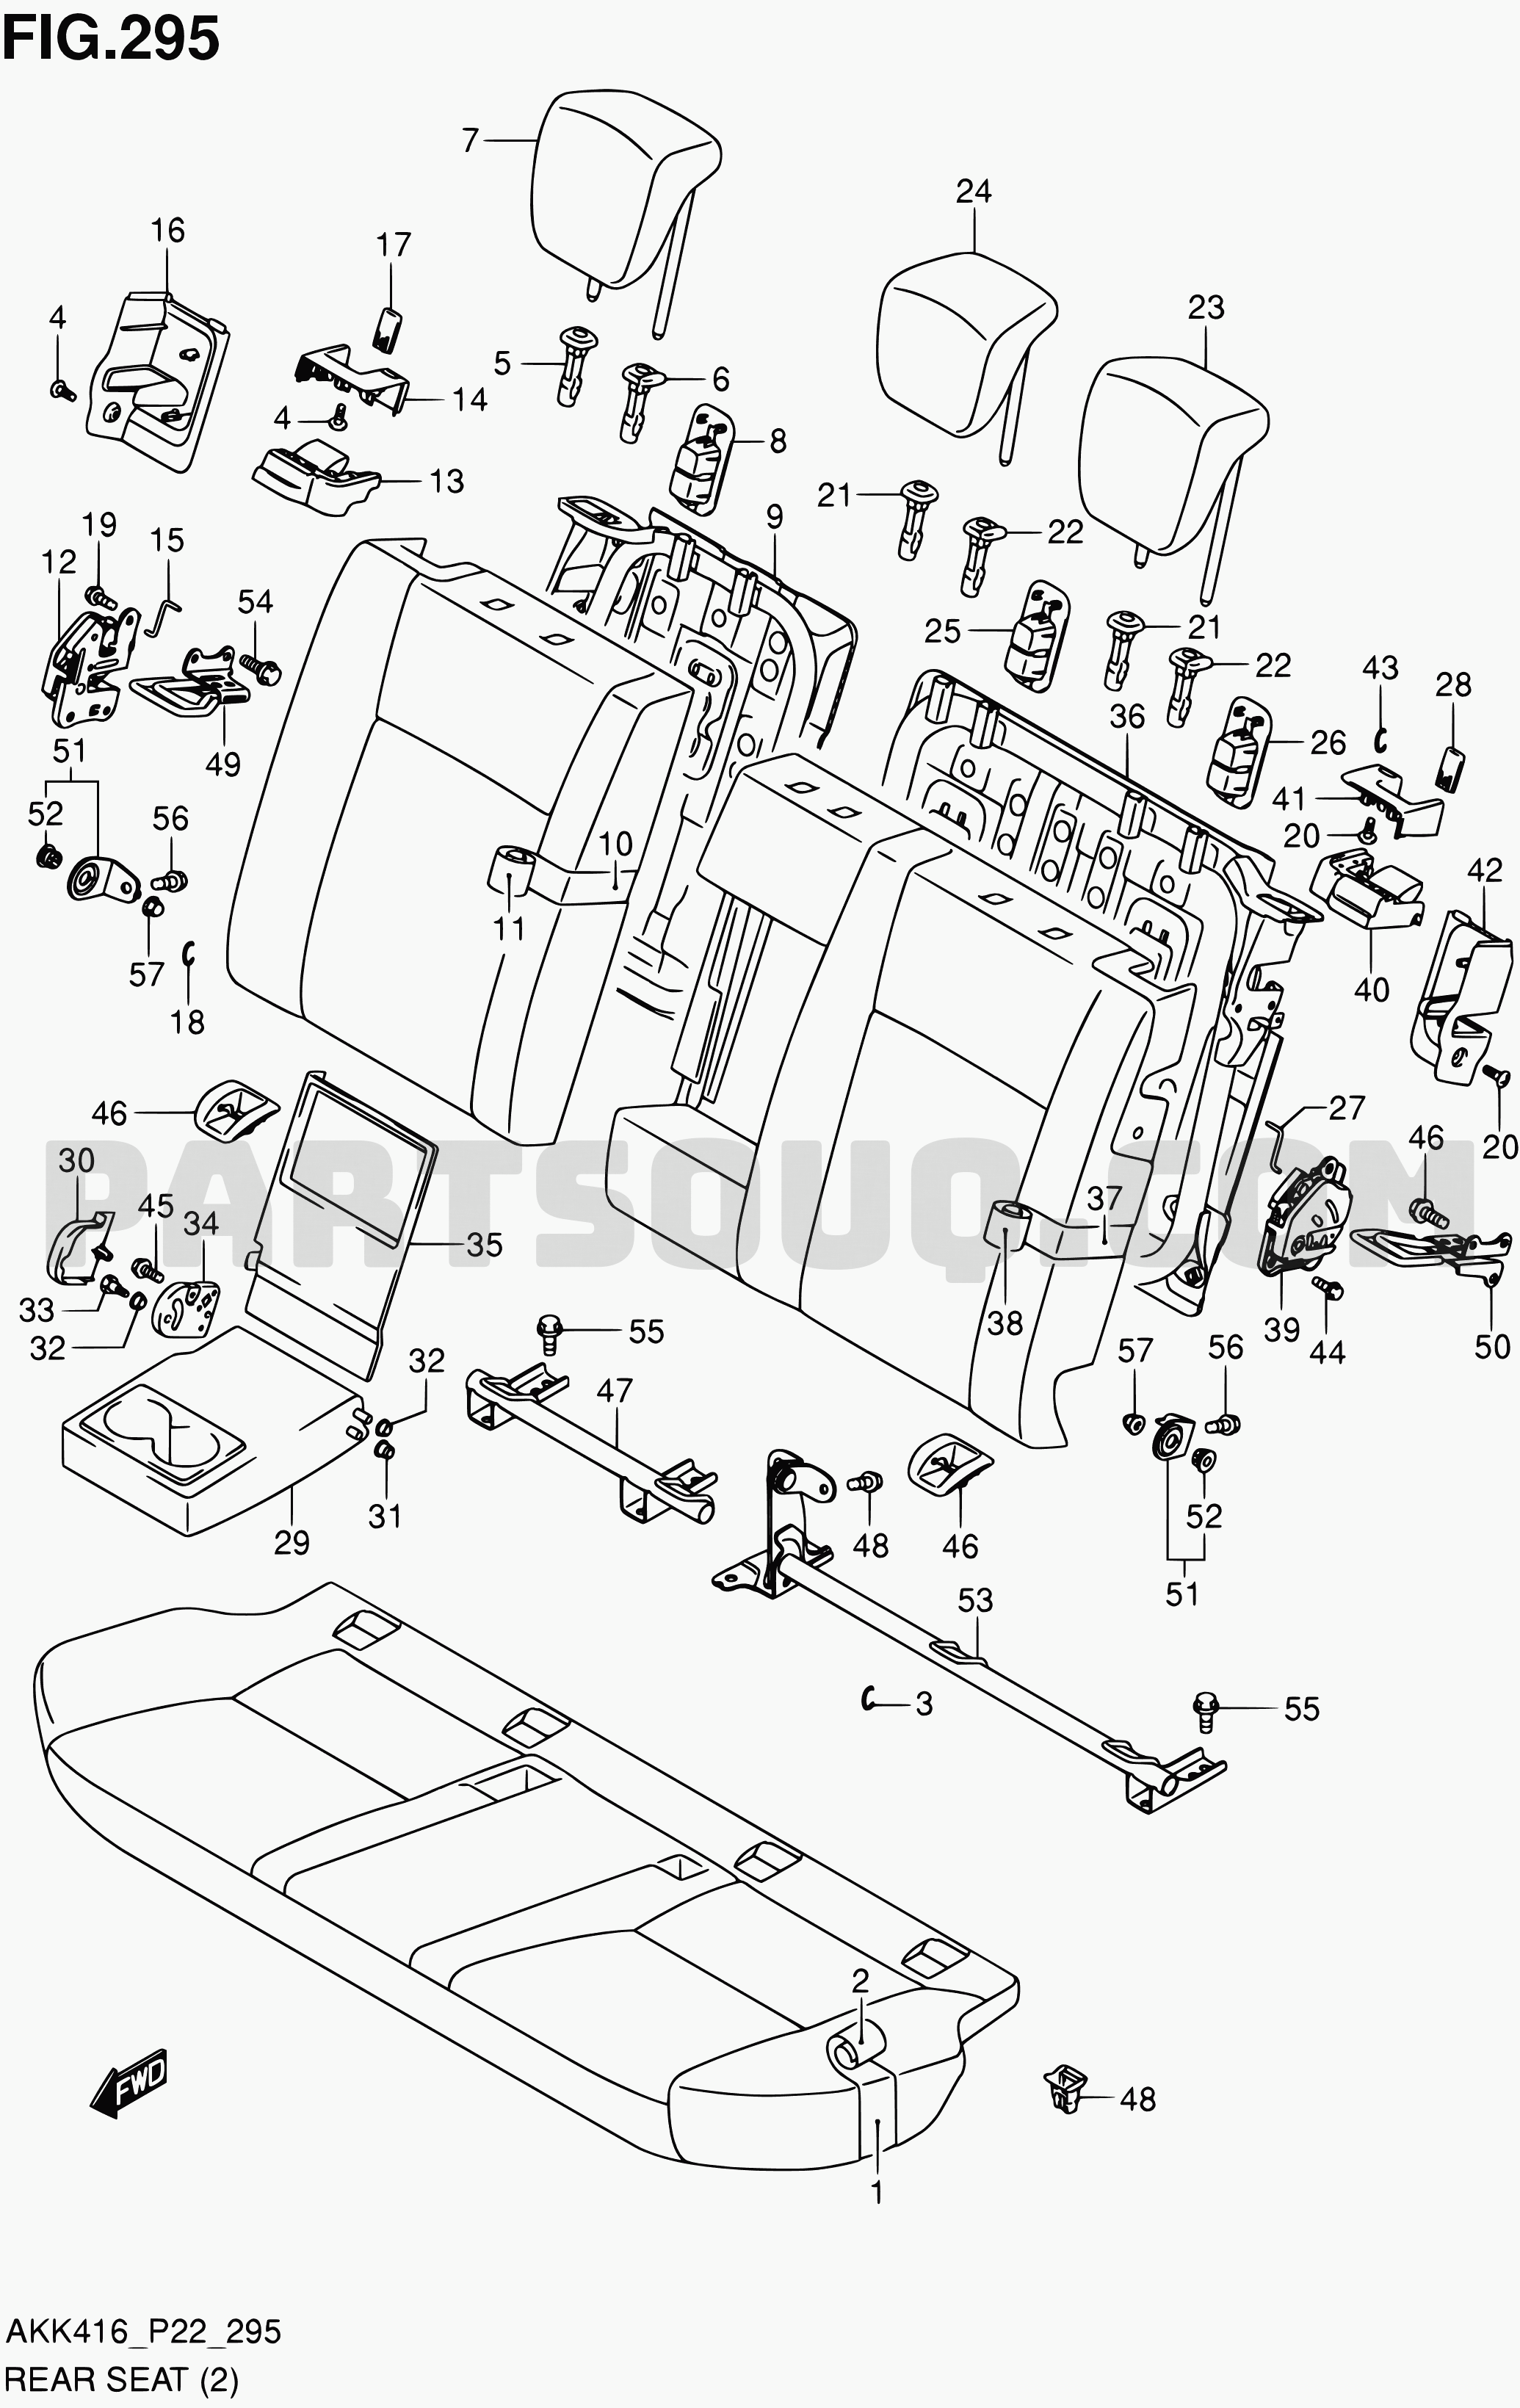 295 - REAR SEAT (W/REAR ARMREST) | Suzuki SX4 AKK416 AKK416 (P02 